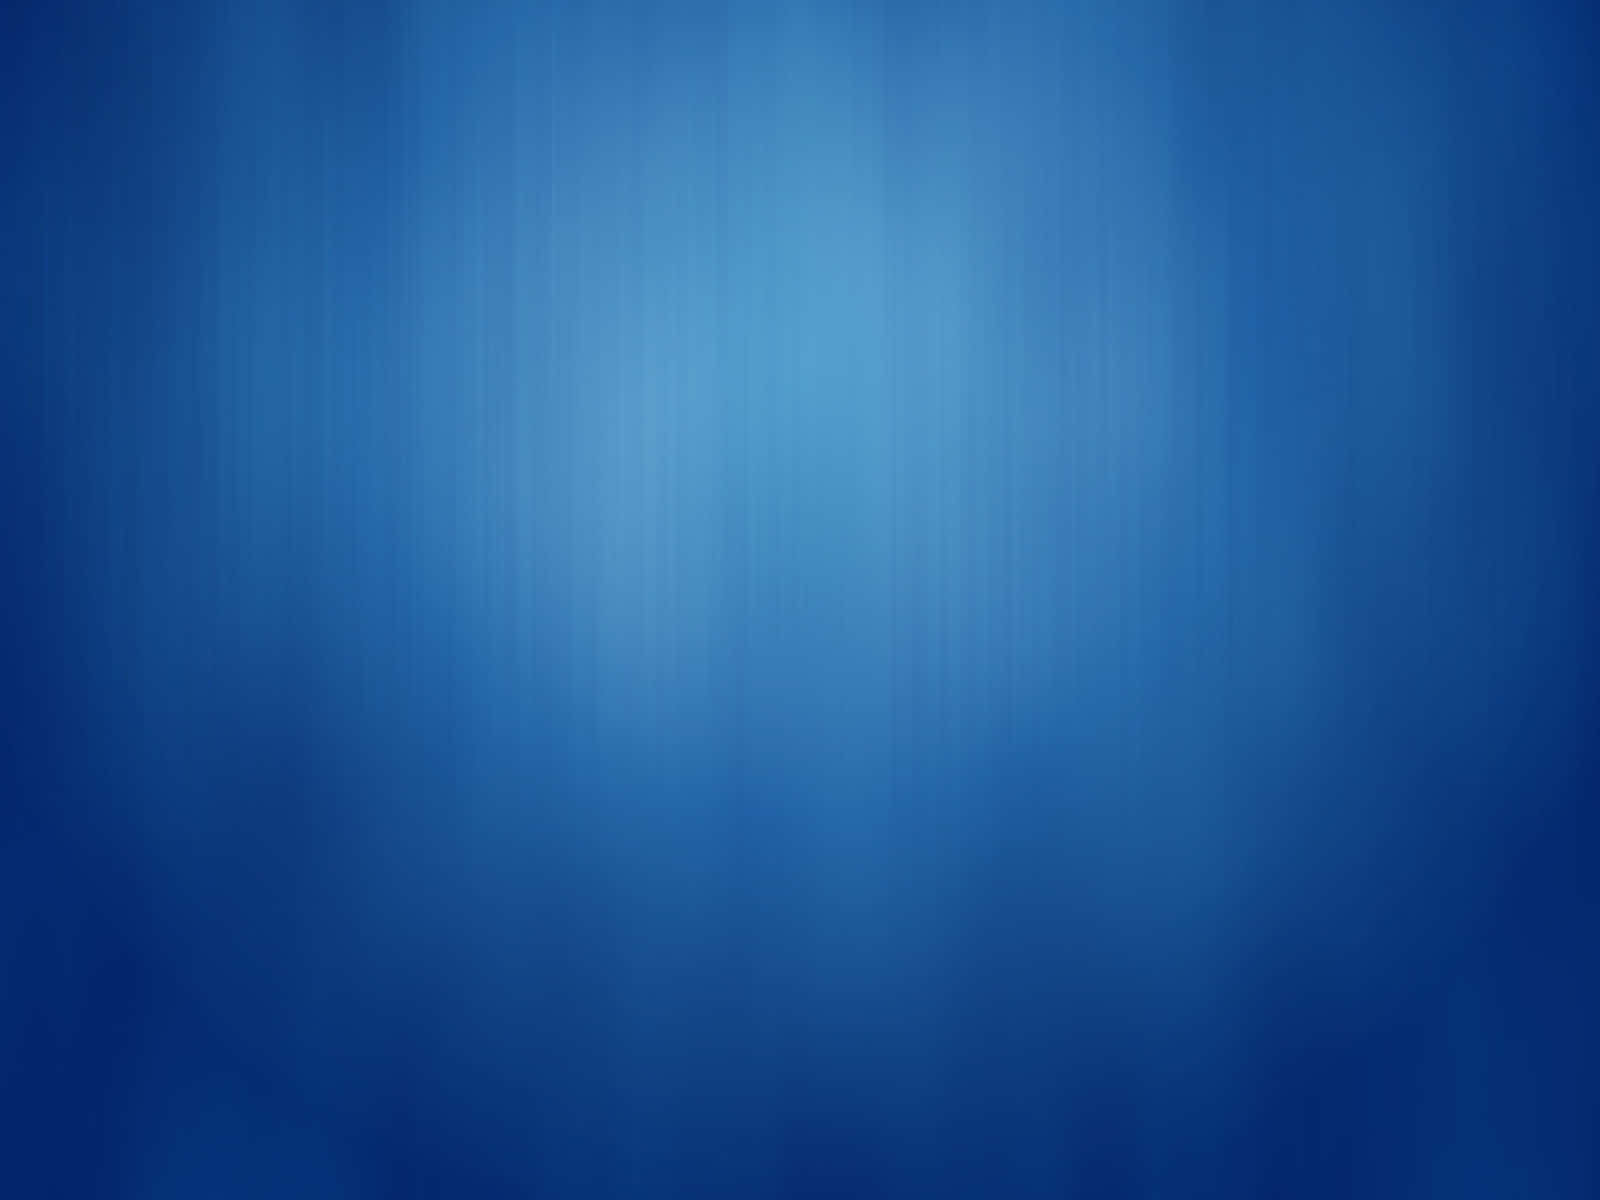 Enkelblåbakgrund